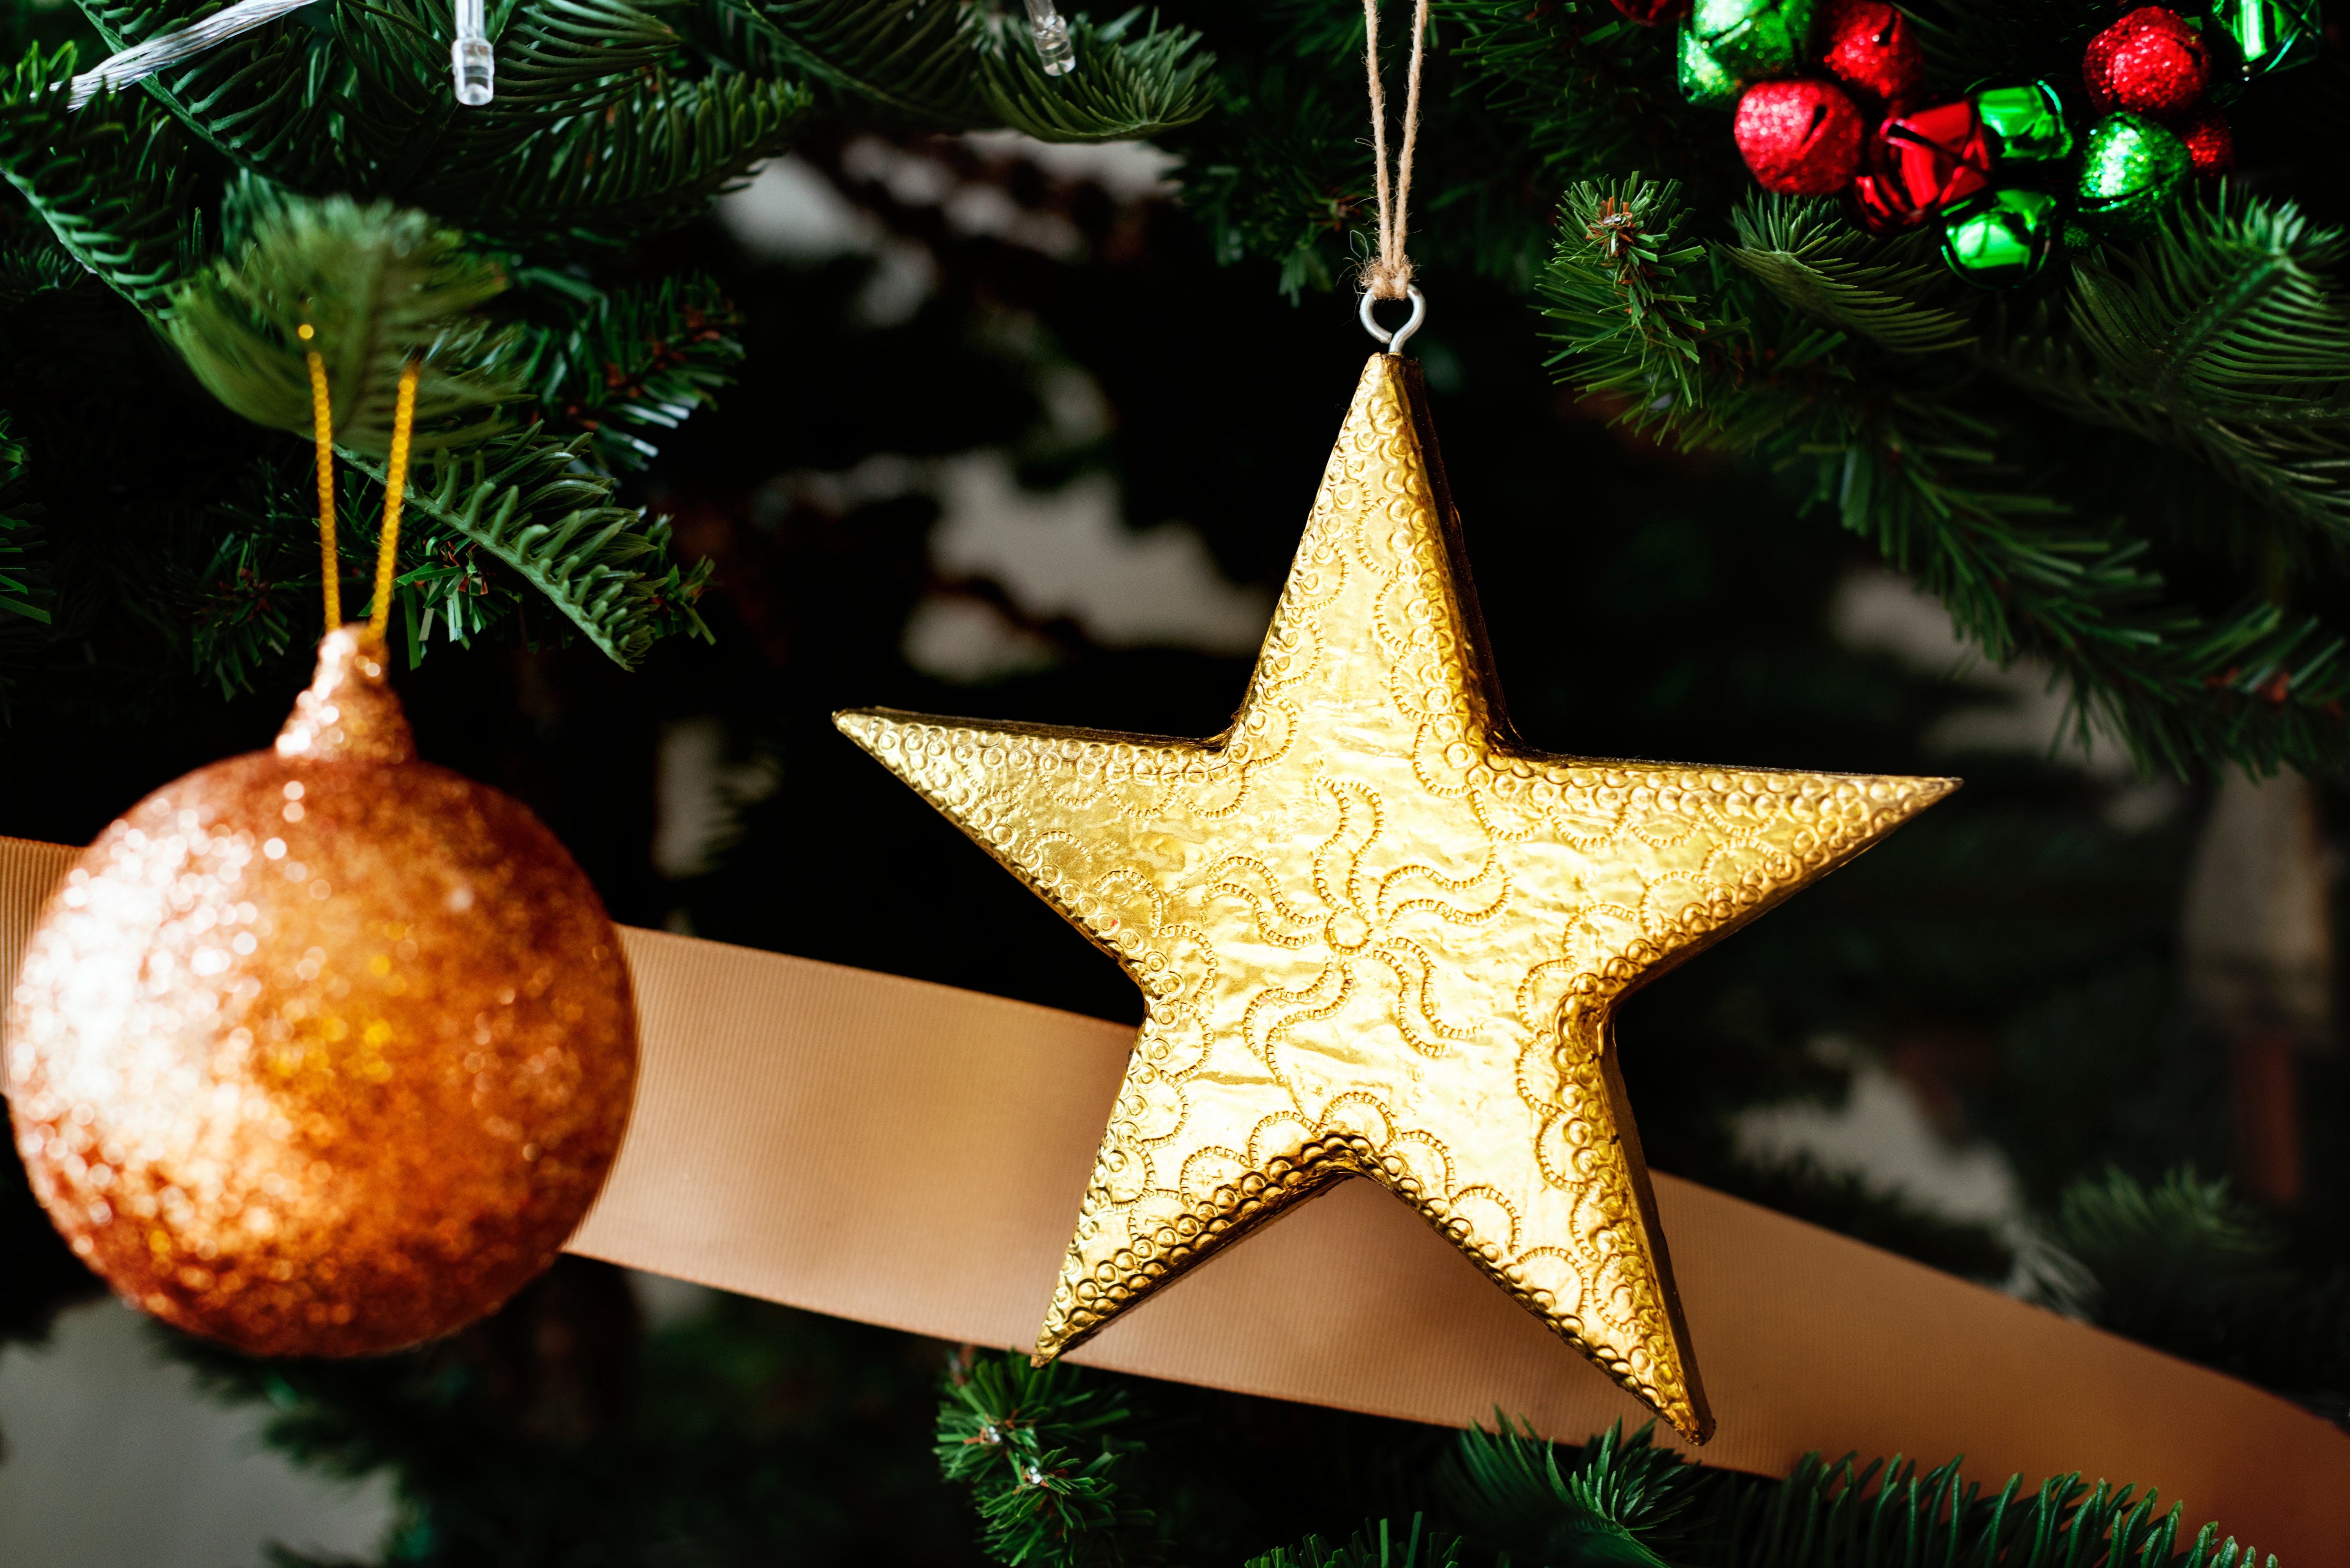 Memorable family Christmas on a budget-star ornament and Christmas decor